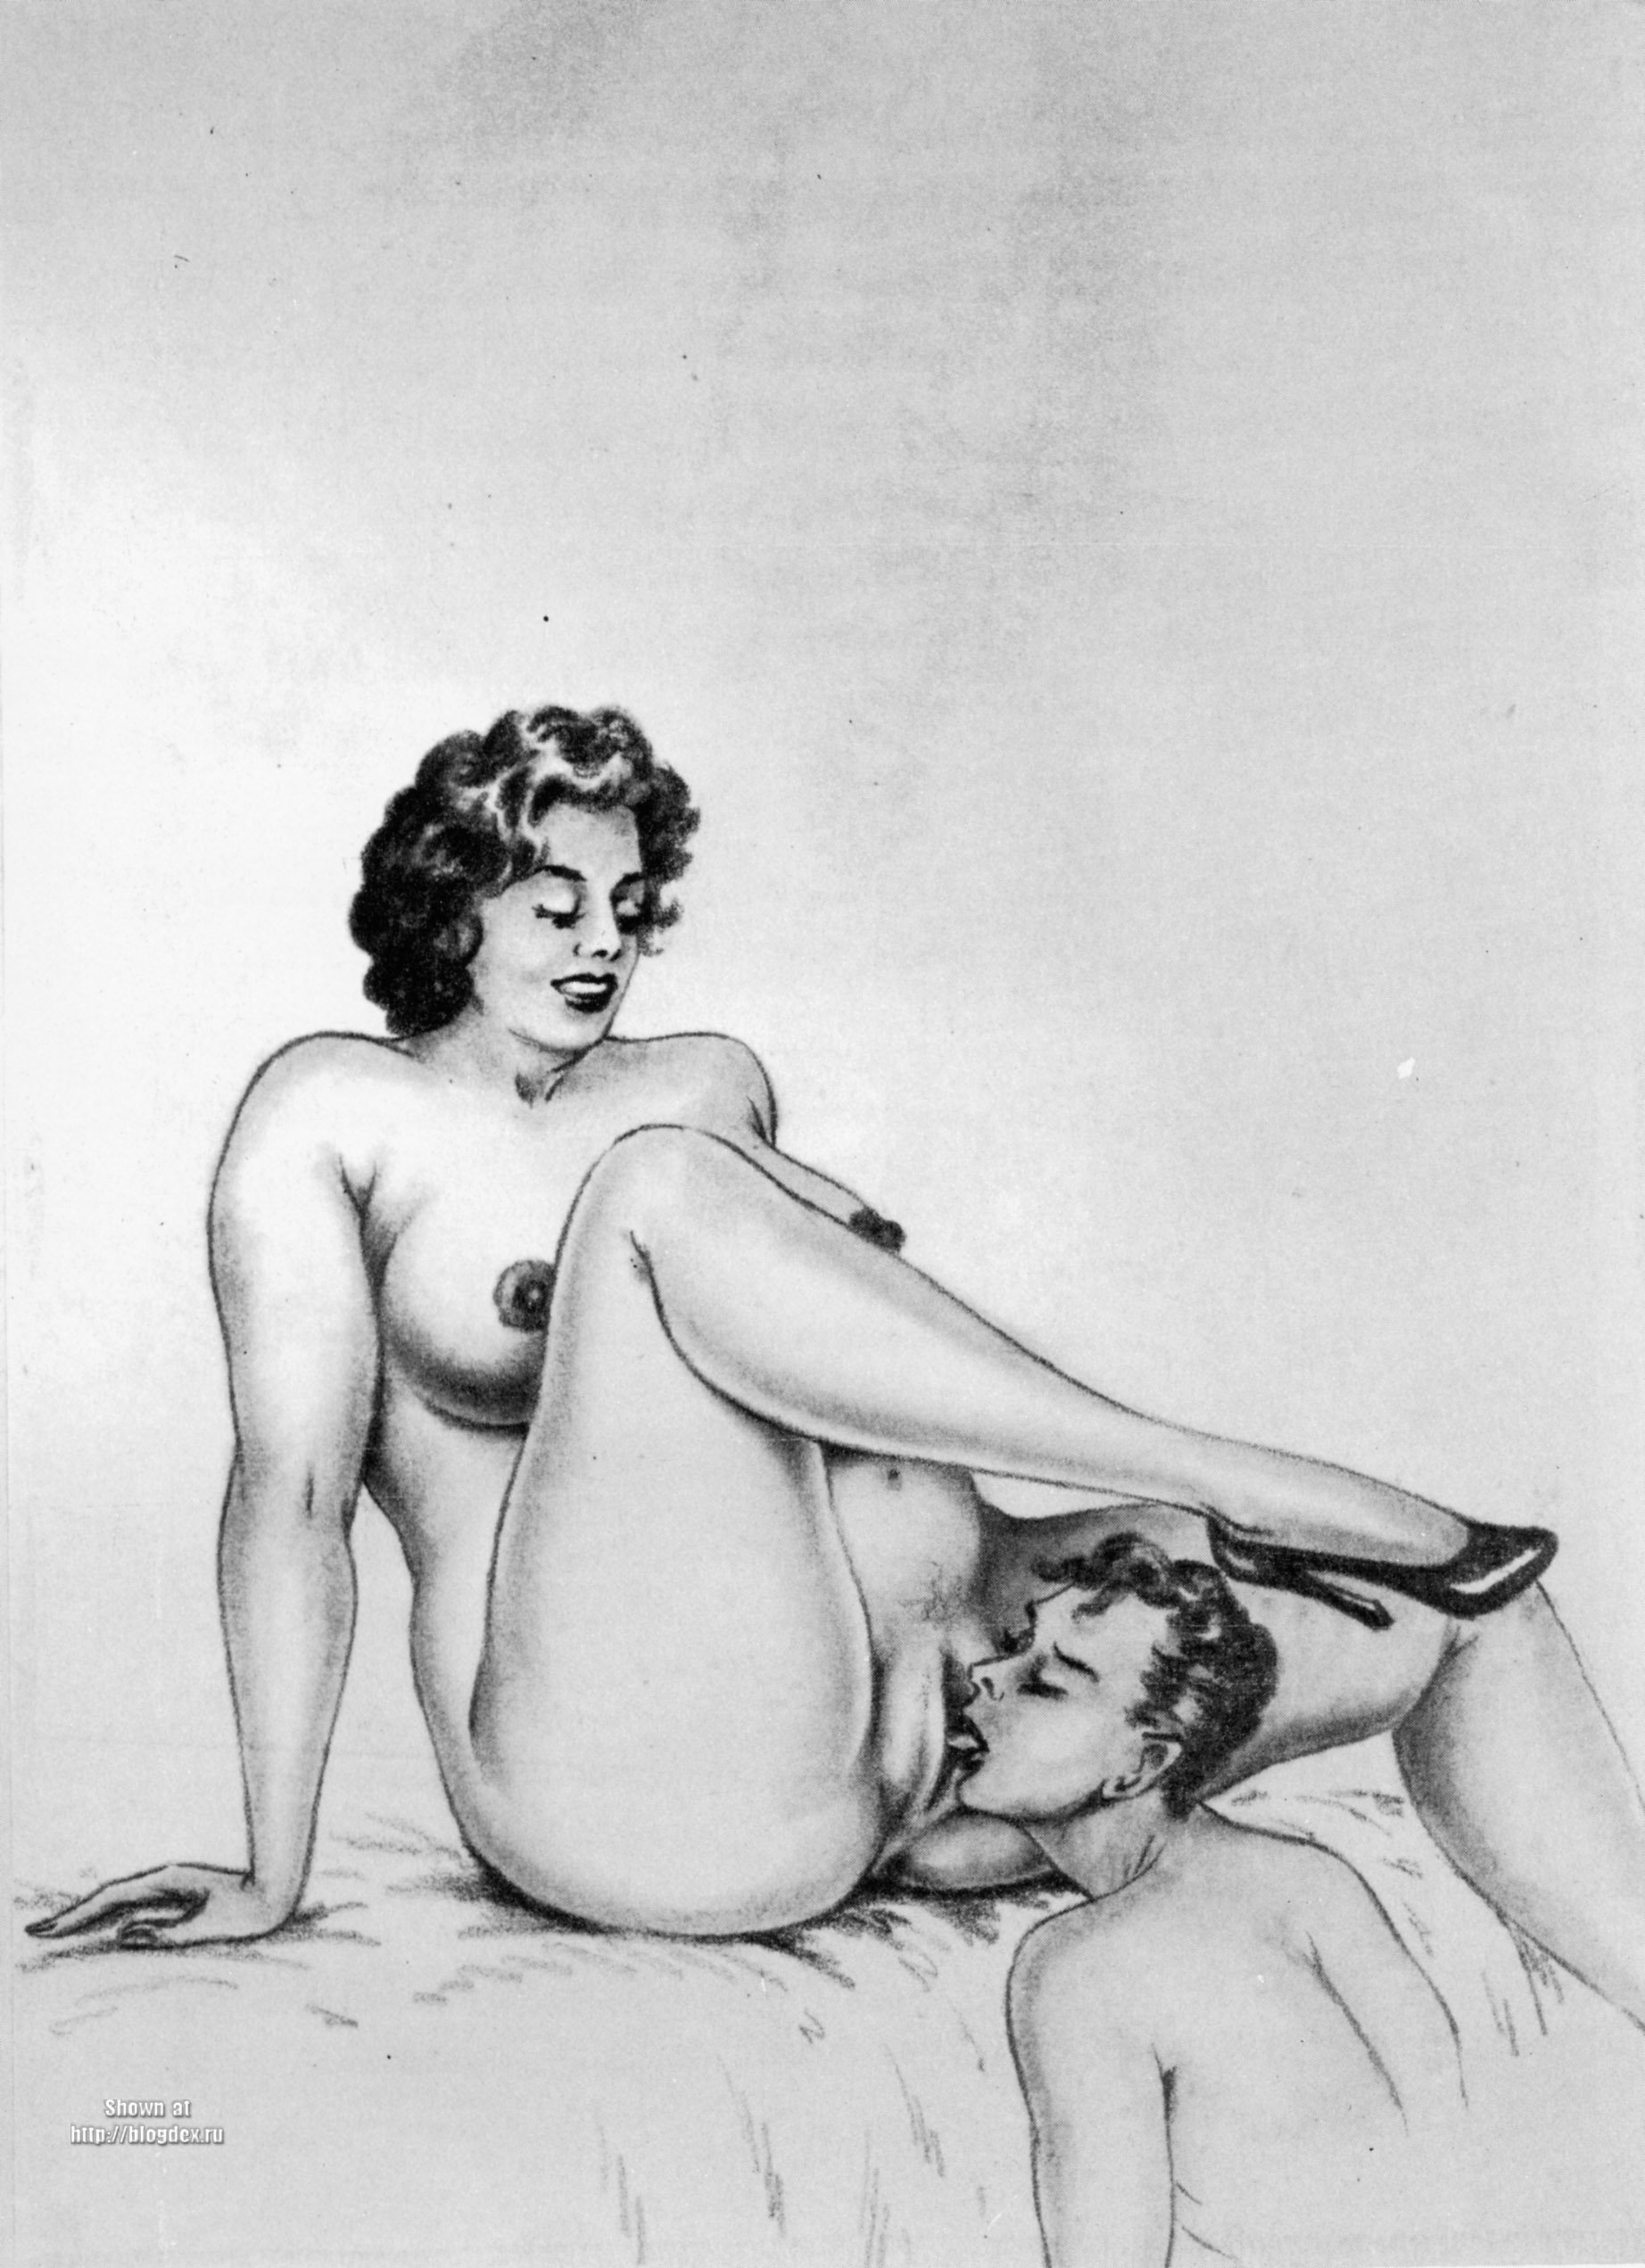 Vintage Porno Cartoons - Vintage Cartoons Gallery